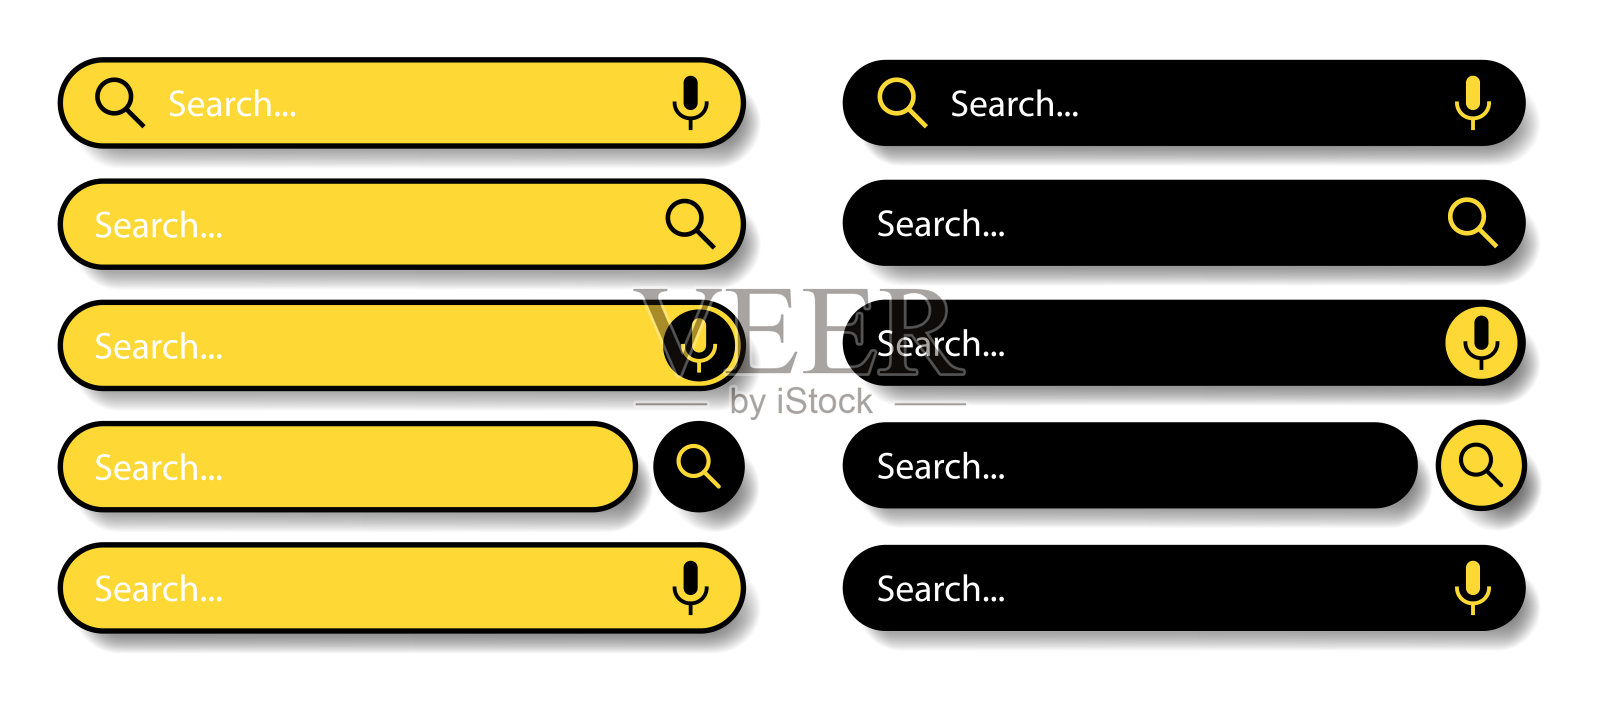 用户界面和网站的搜索栏。白色背景上的黑色和黄色图标。现代选择的搜索栏。矢量插图。插画图片素材